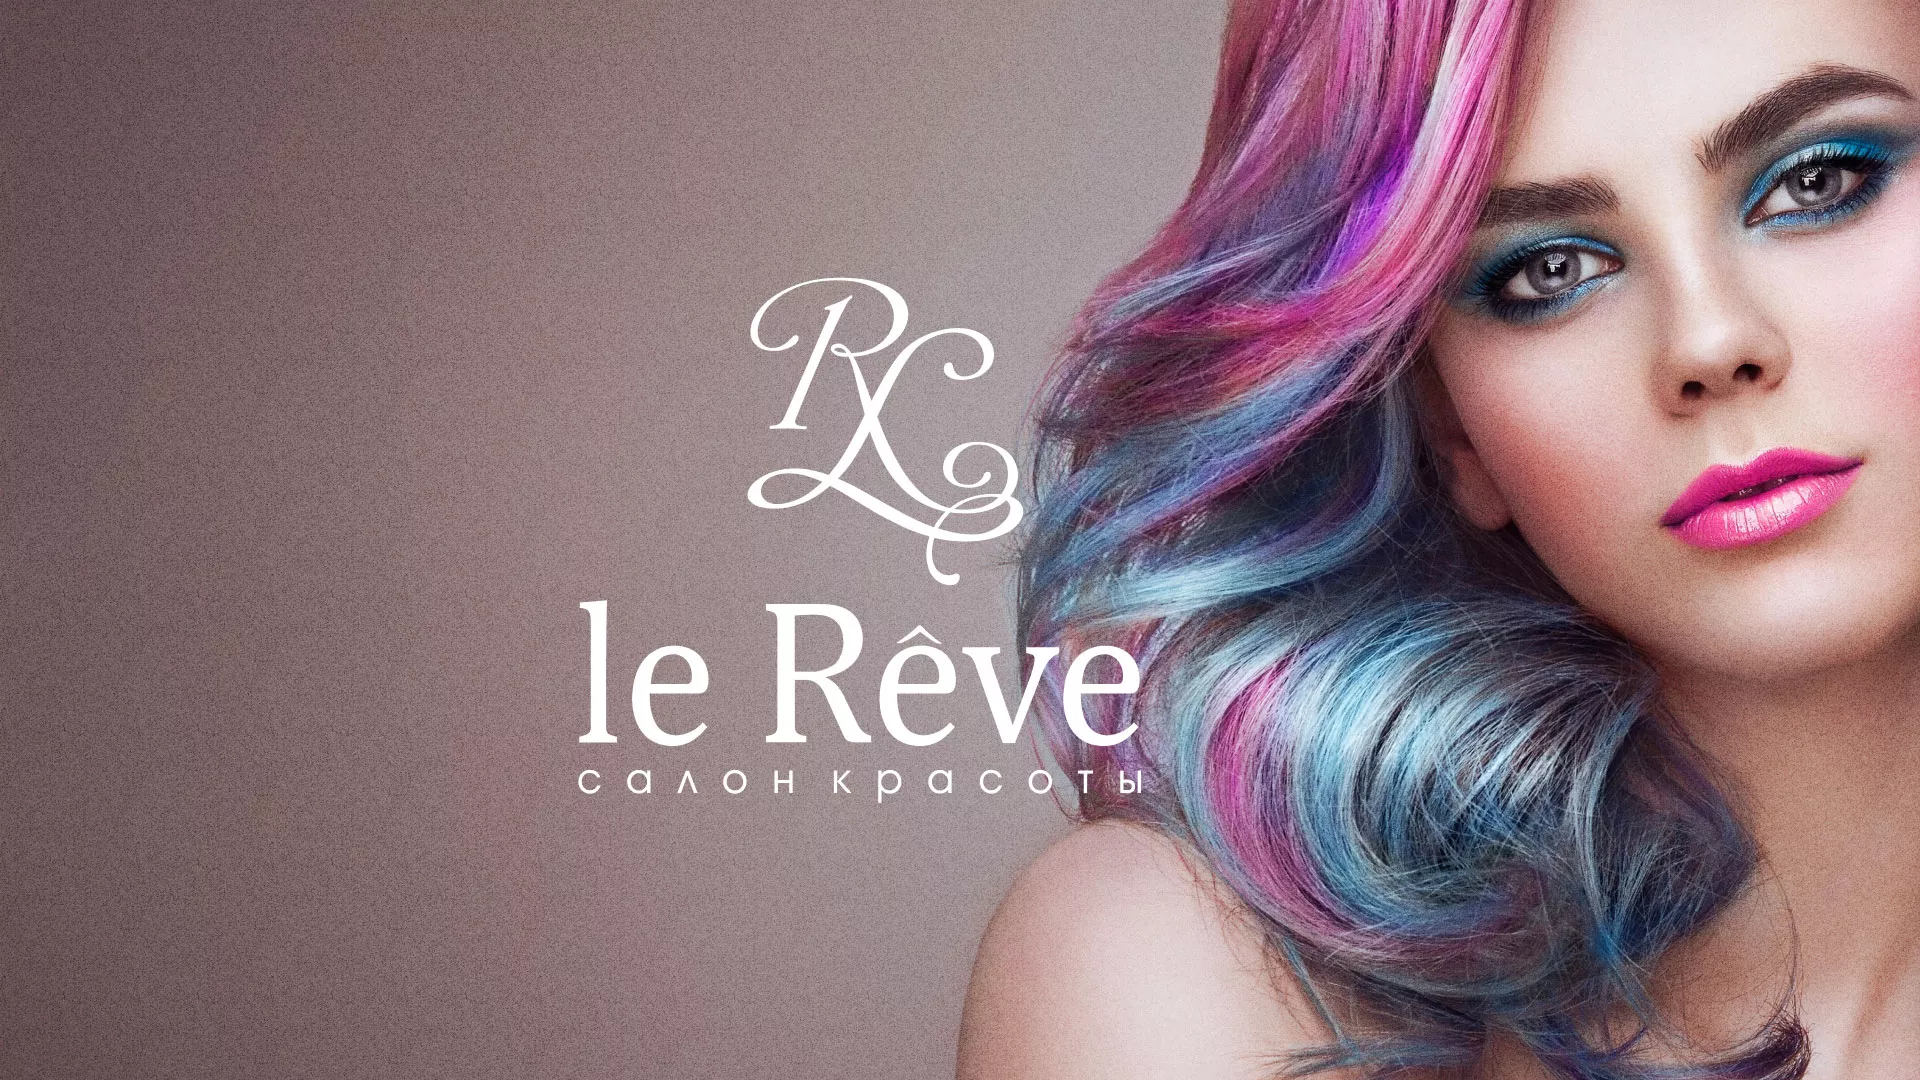 Создание сайта для салона красоты «Le Reve» в Волжском